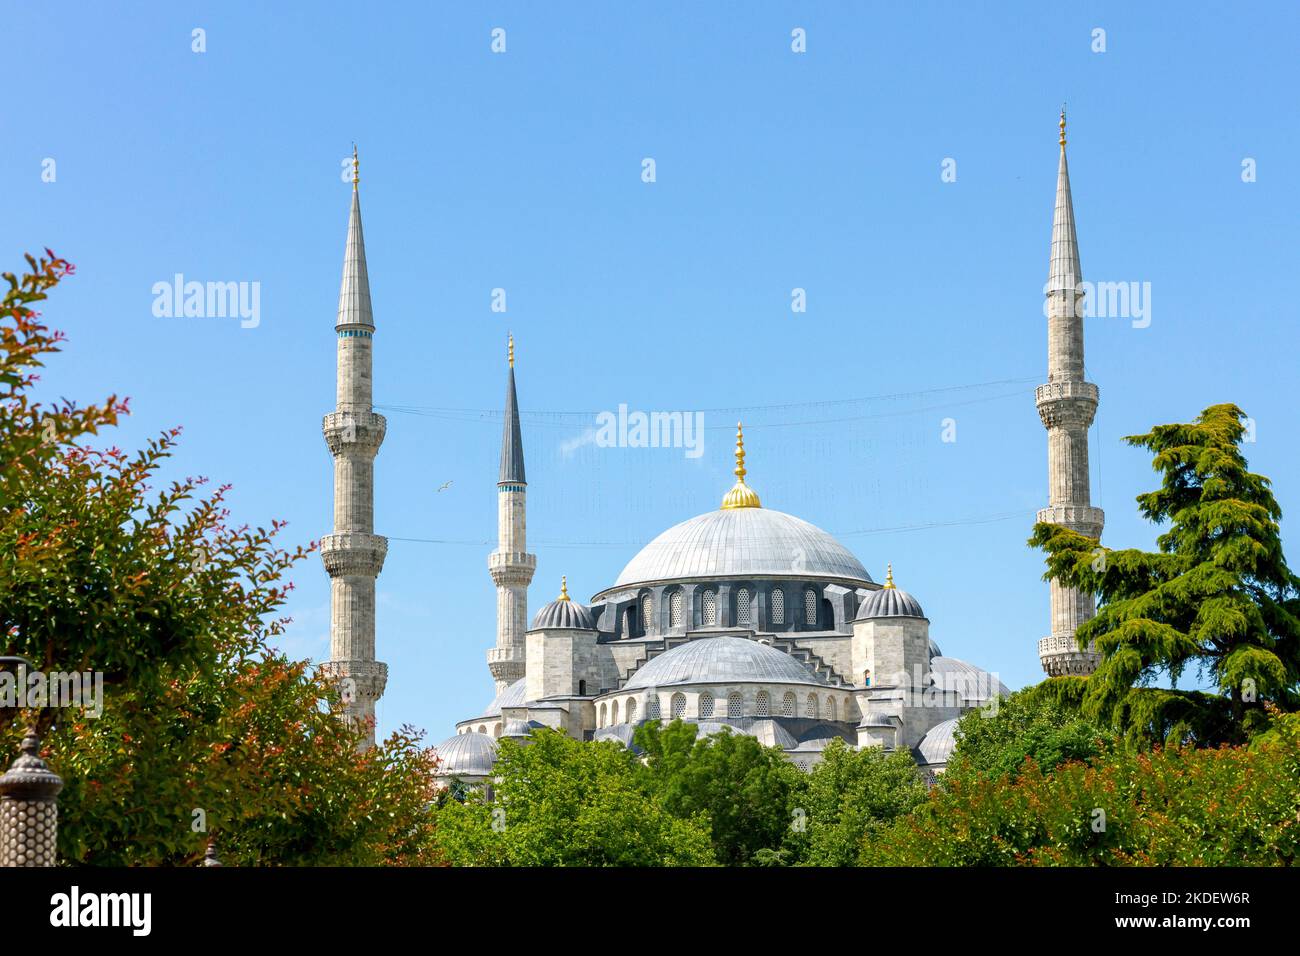 Moschea Blu, vista esterna della famosa Moschea del Sultano Ahmed, una moschea imperiale di epoca ottomana a Istanbul, Turchia. È un sito patrimonio dell'umanità dell'UNESCO. Foto Stock